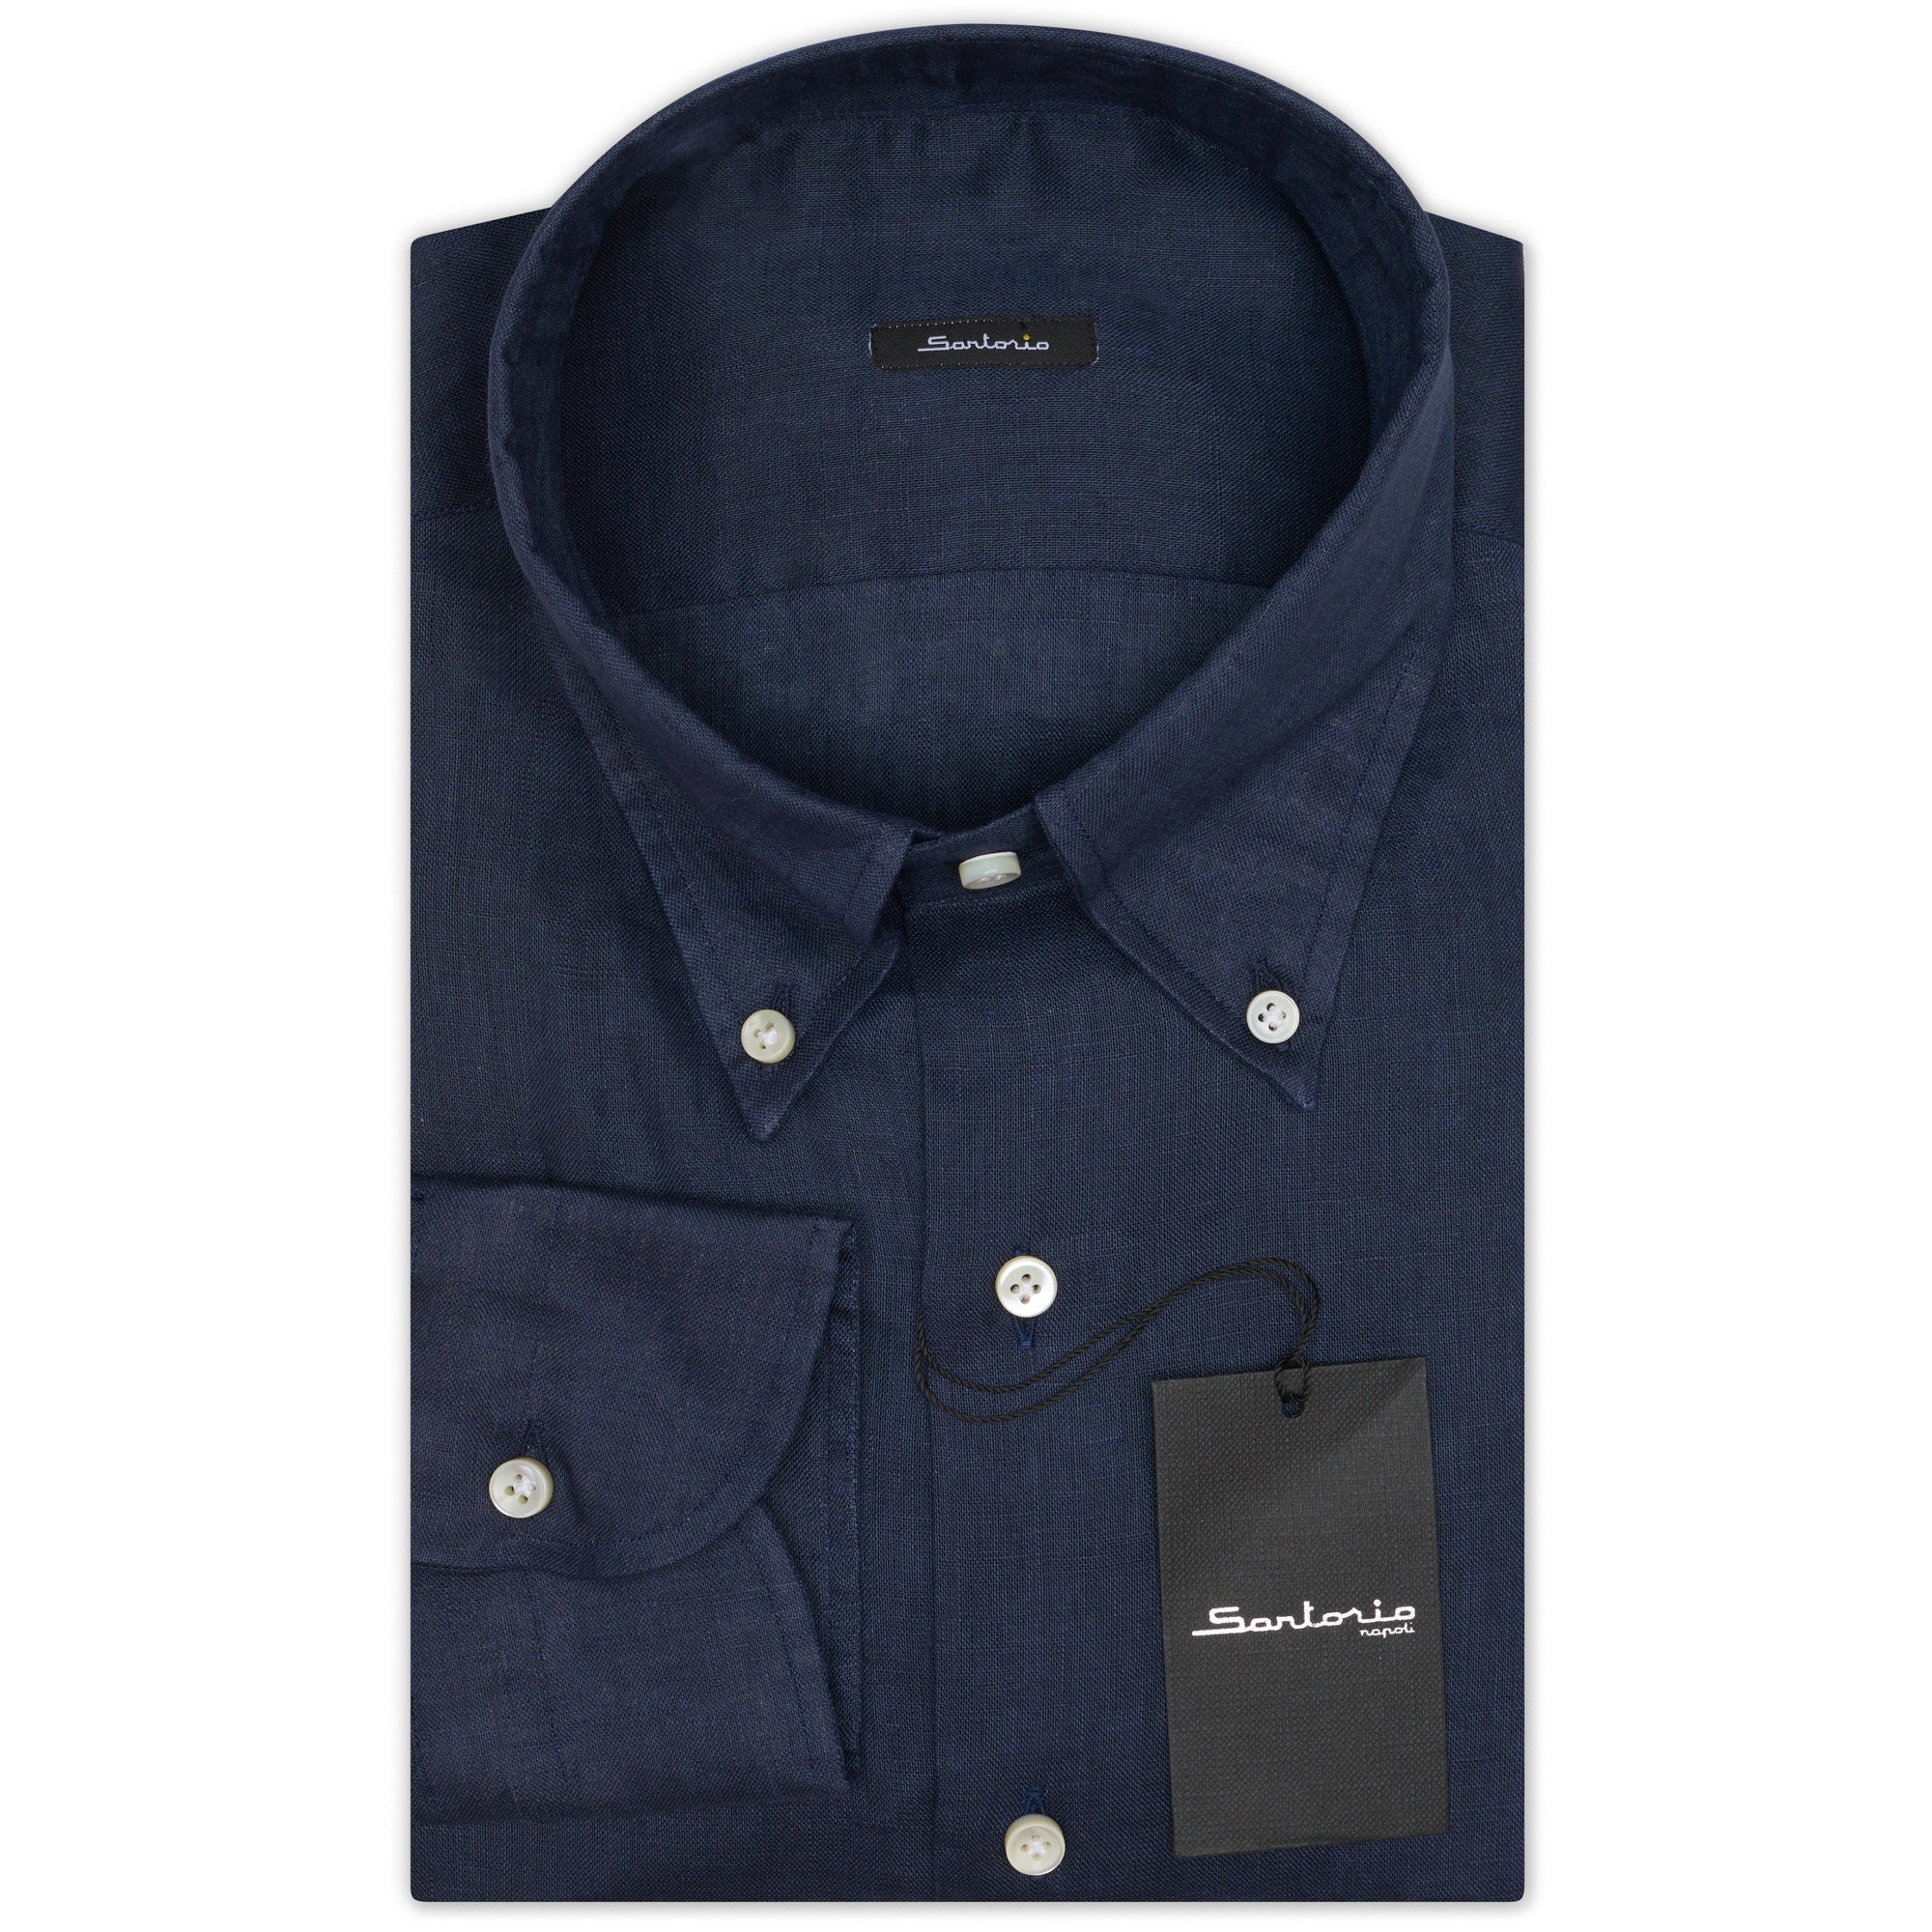 SARTORIO Napoli by KITON Indigo Blue Linen Button-Down Casual Shirt EU 40 NEW US 15.75